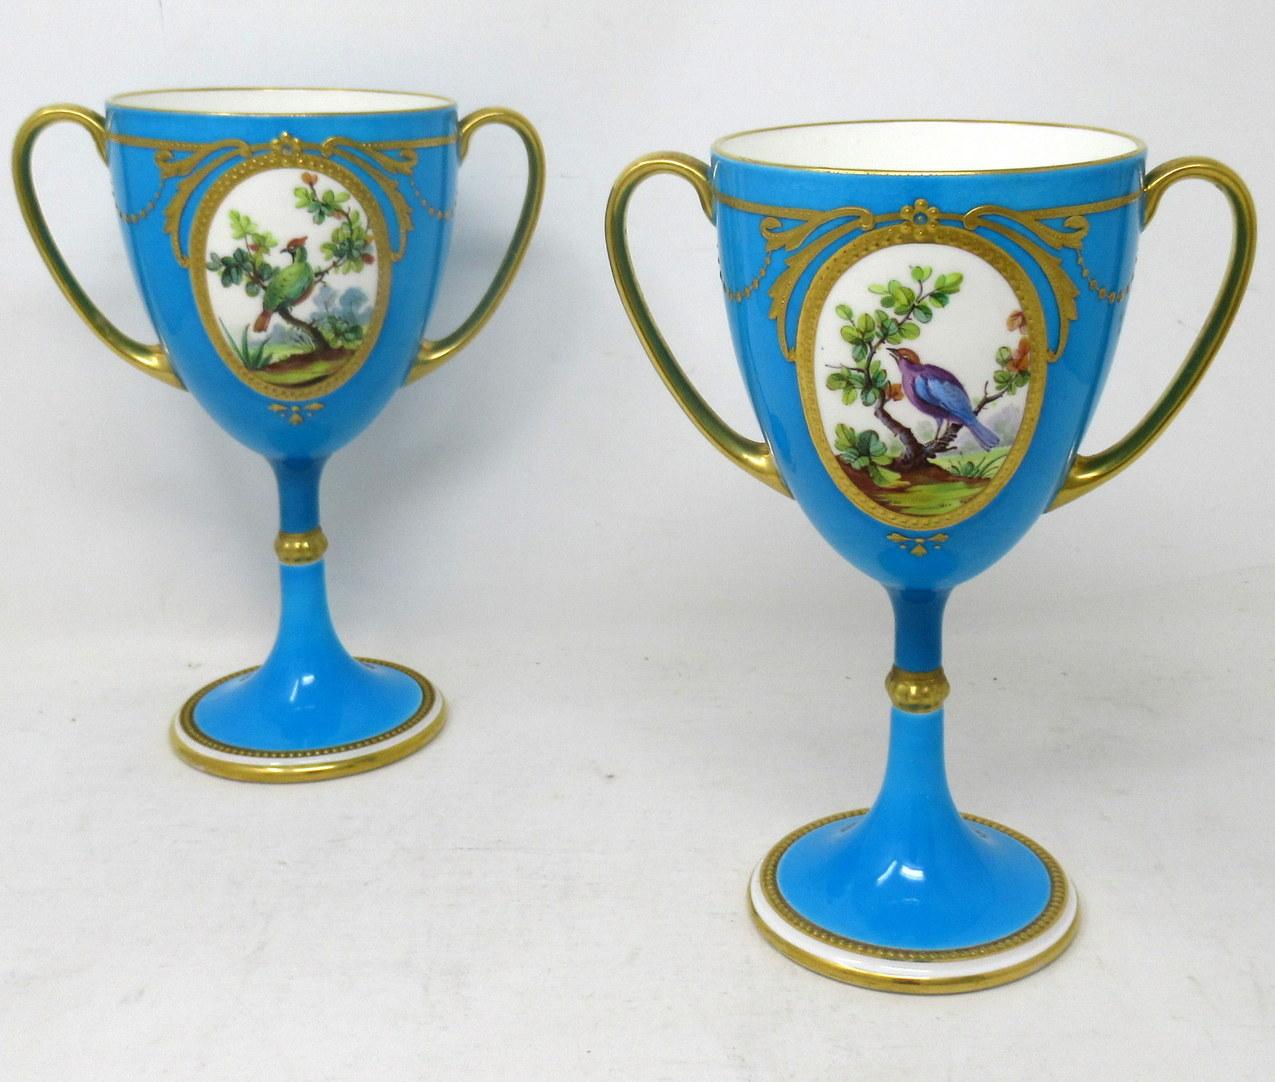 Atemberaubendes Beispiel für ein Paar englischer Minton-Porzellan-Langstiel-Doppelhenkel-Tassen oder -Vasen von herausragender Qualität, die dem Künstler James Edwin Dean (1863-1935) fest zugeschrieben werden. 

Jede zentrale ovale Reserve ist mit